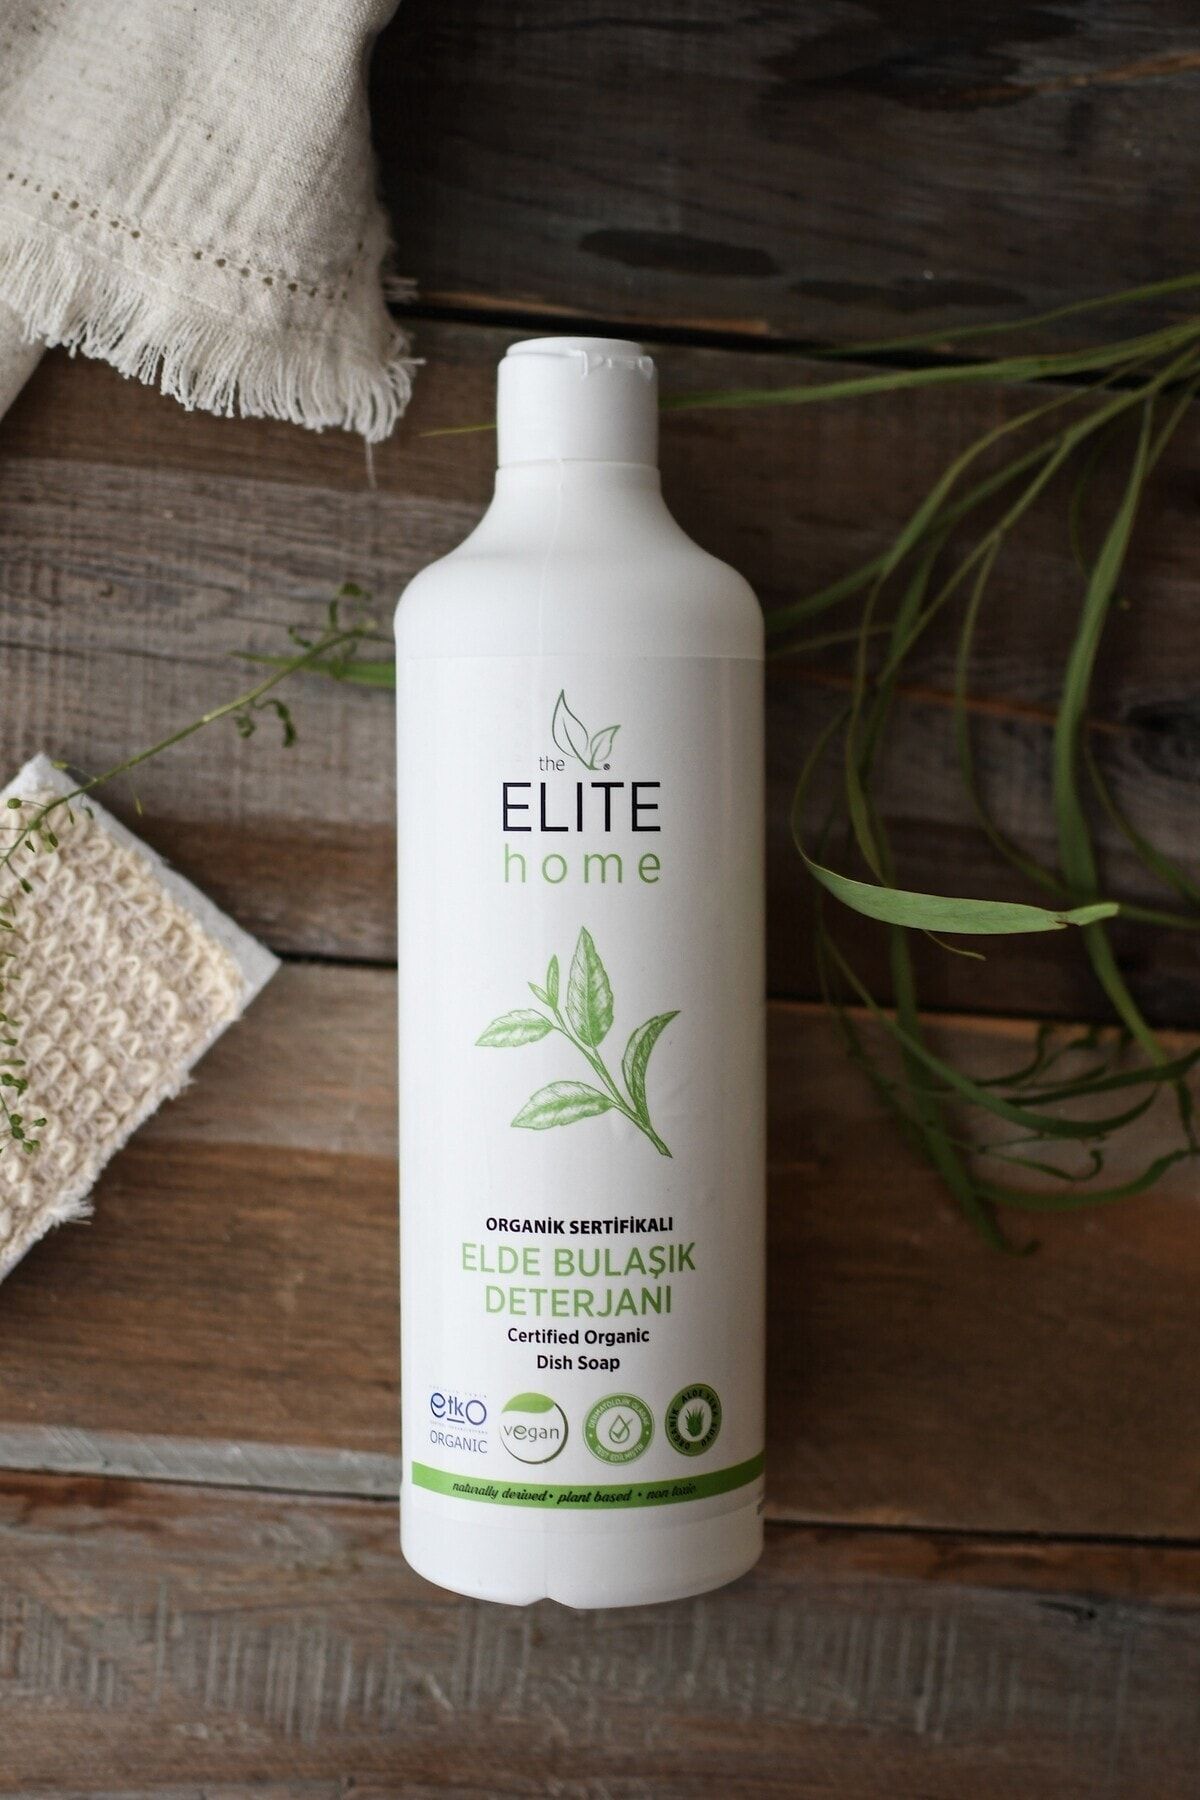 The Elite Home Organik Sertifikalı Elde Bulaşık Deterjanı 750 ml Portakal Yağlı